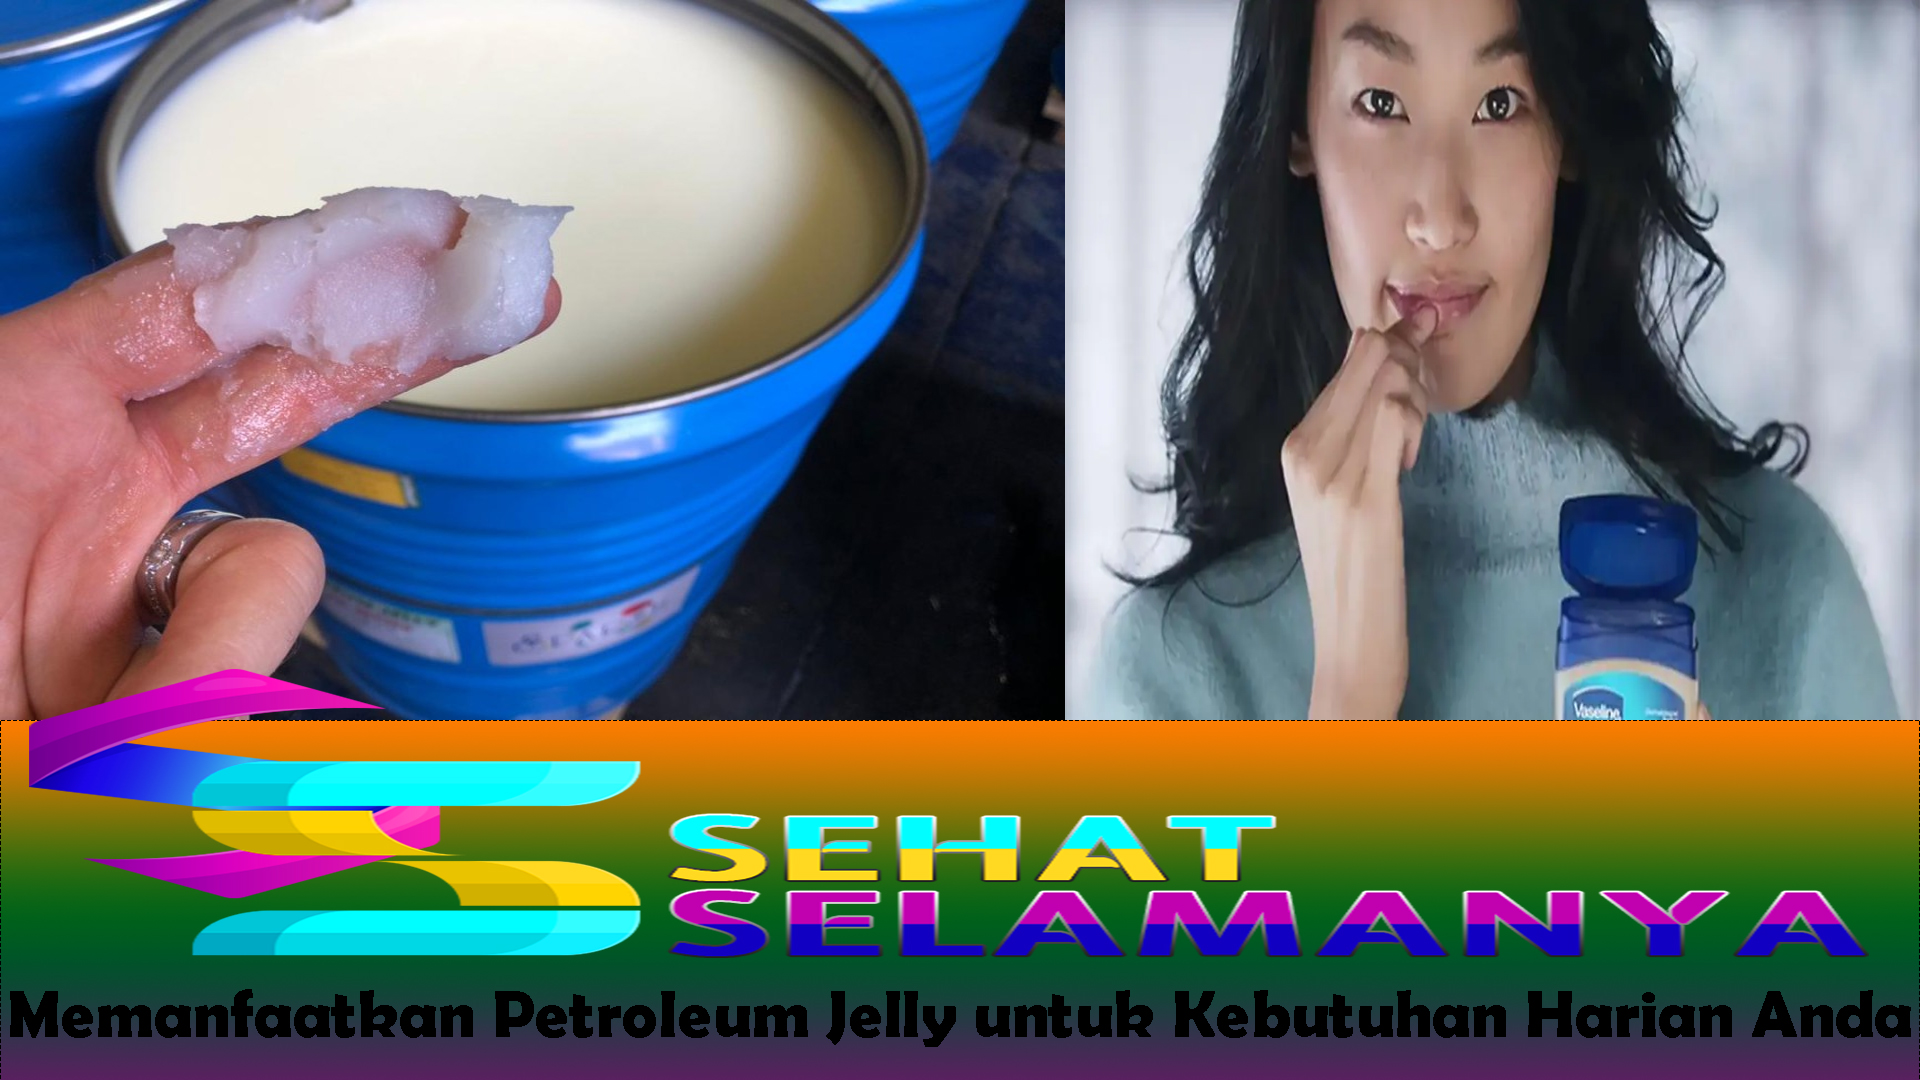 Memanfaatkan Petroleum Jelly untuk Kebutuhan Harian Anda